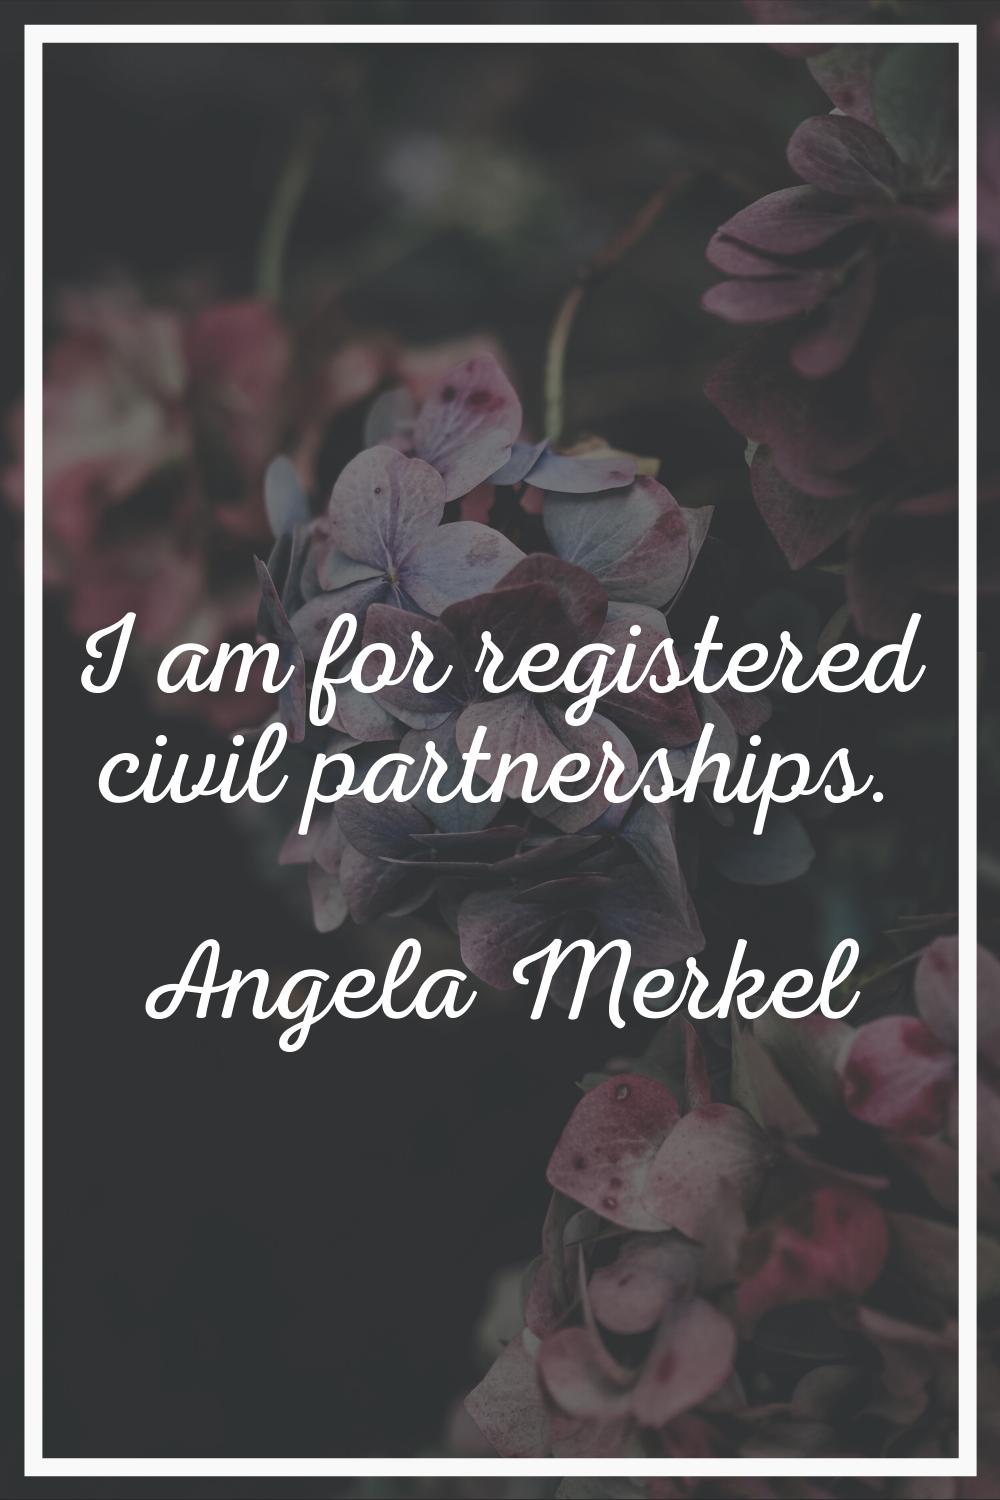 I am for registered civil partnerships.